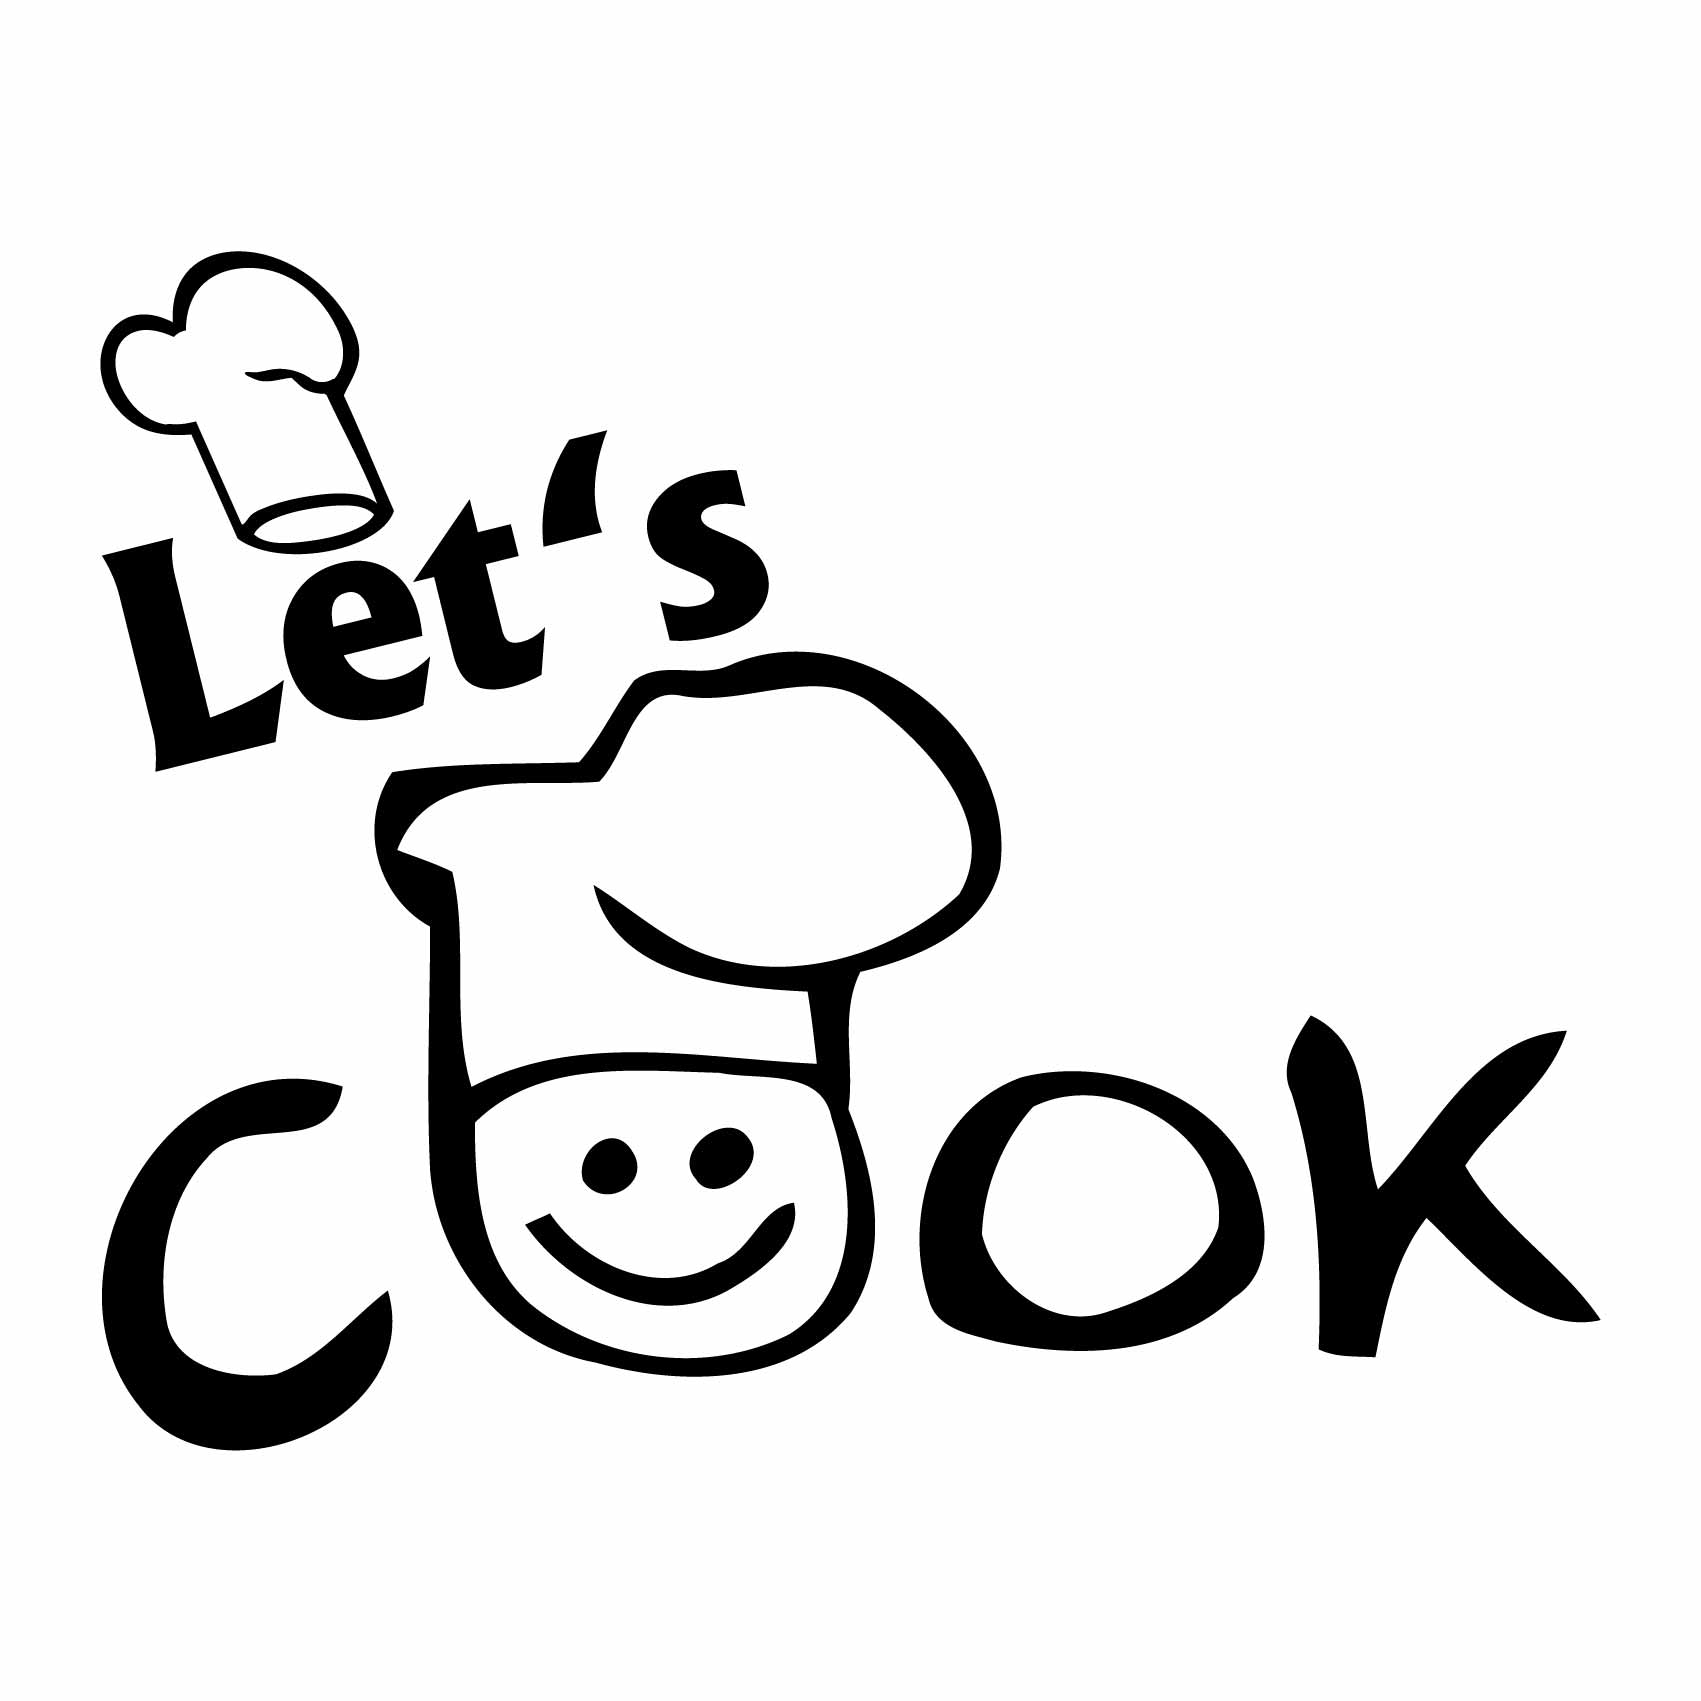 stickers-cuisine-let-s-cook-ref13cuisine-autocollant-muraux-cuisine-kitchen-sticker-mural-deco-decoration-(2)